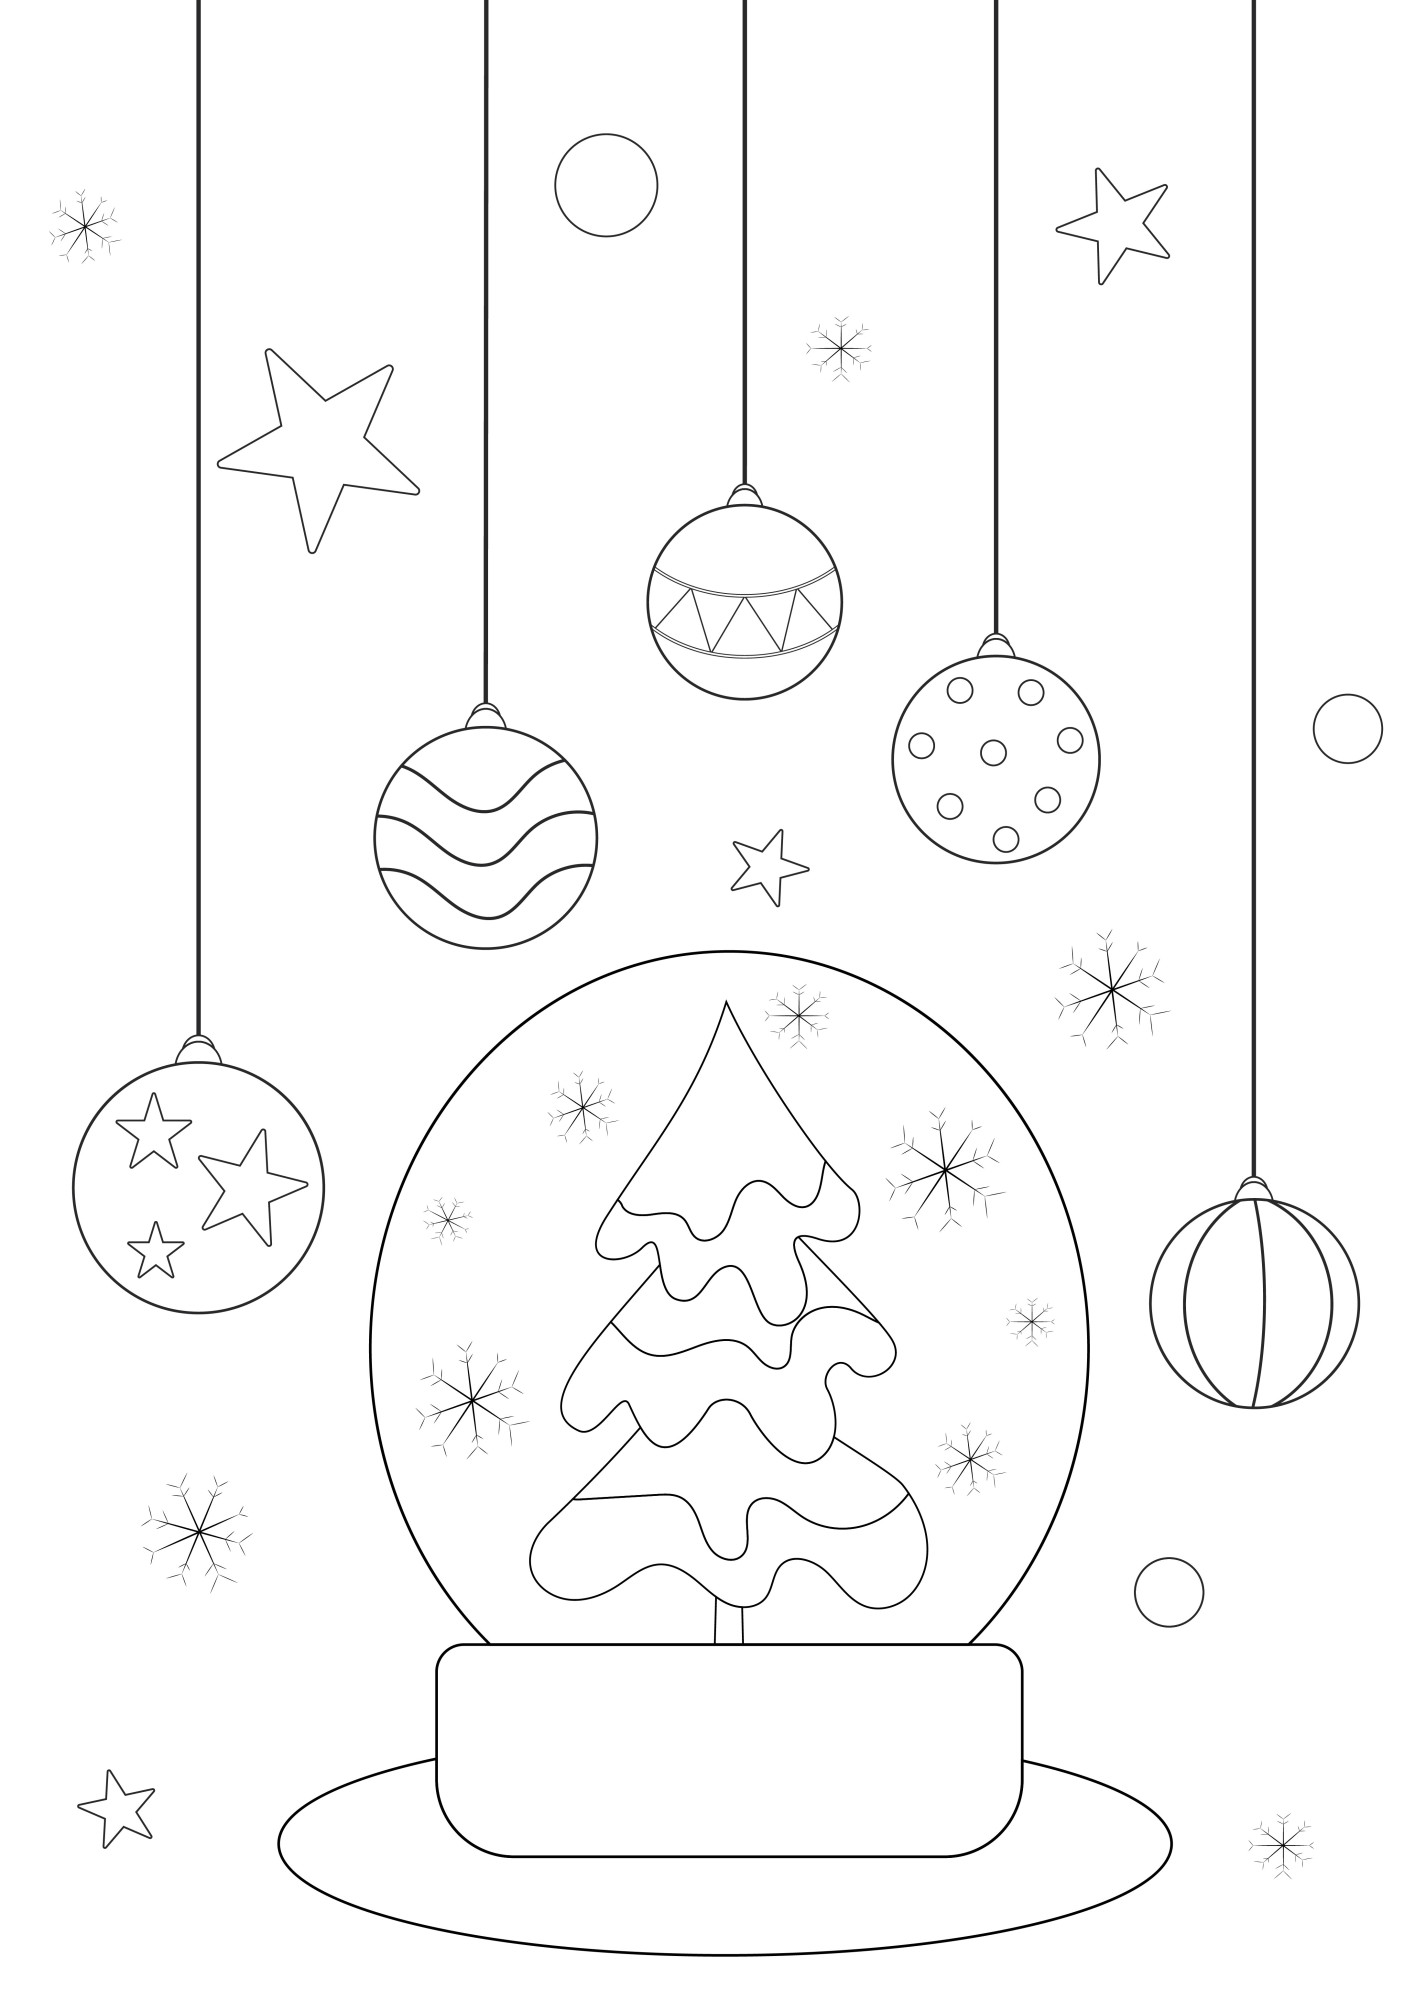 Раскраска для детей: новогодний шар со снежинками и елочными игрушками